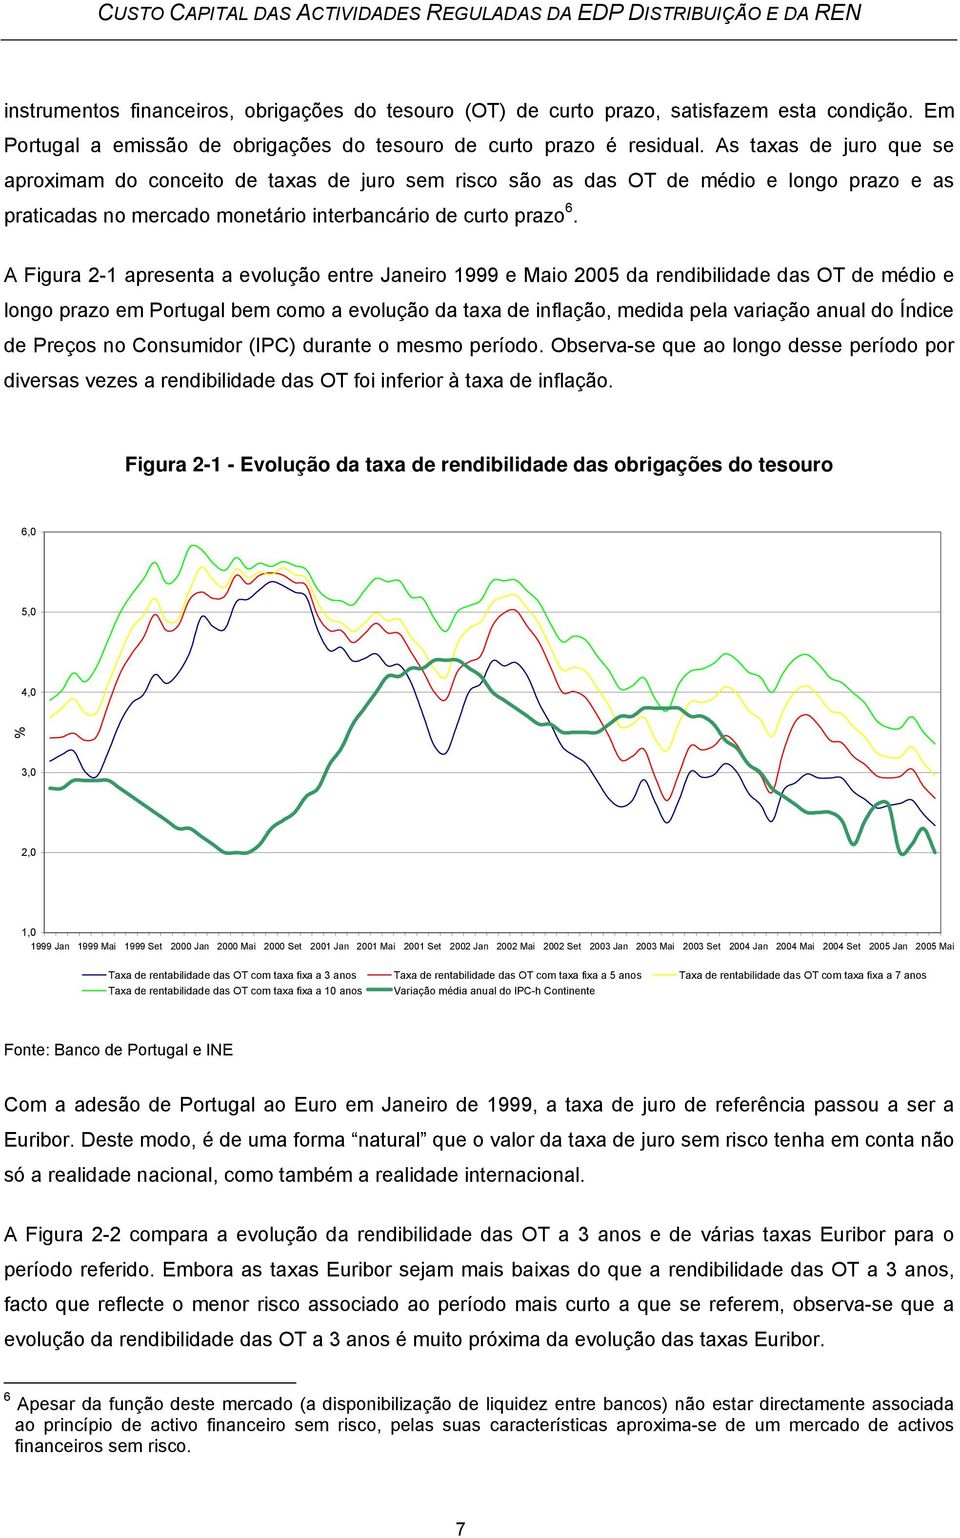 A Figura 2-1 apresenta a evolução entre Janeiro 1999 e Maio 2005 da rendibilidade das OT de médio e longo prazo em Portugal bem como a evolução da taxa de inflação, medida pela variação anual do